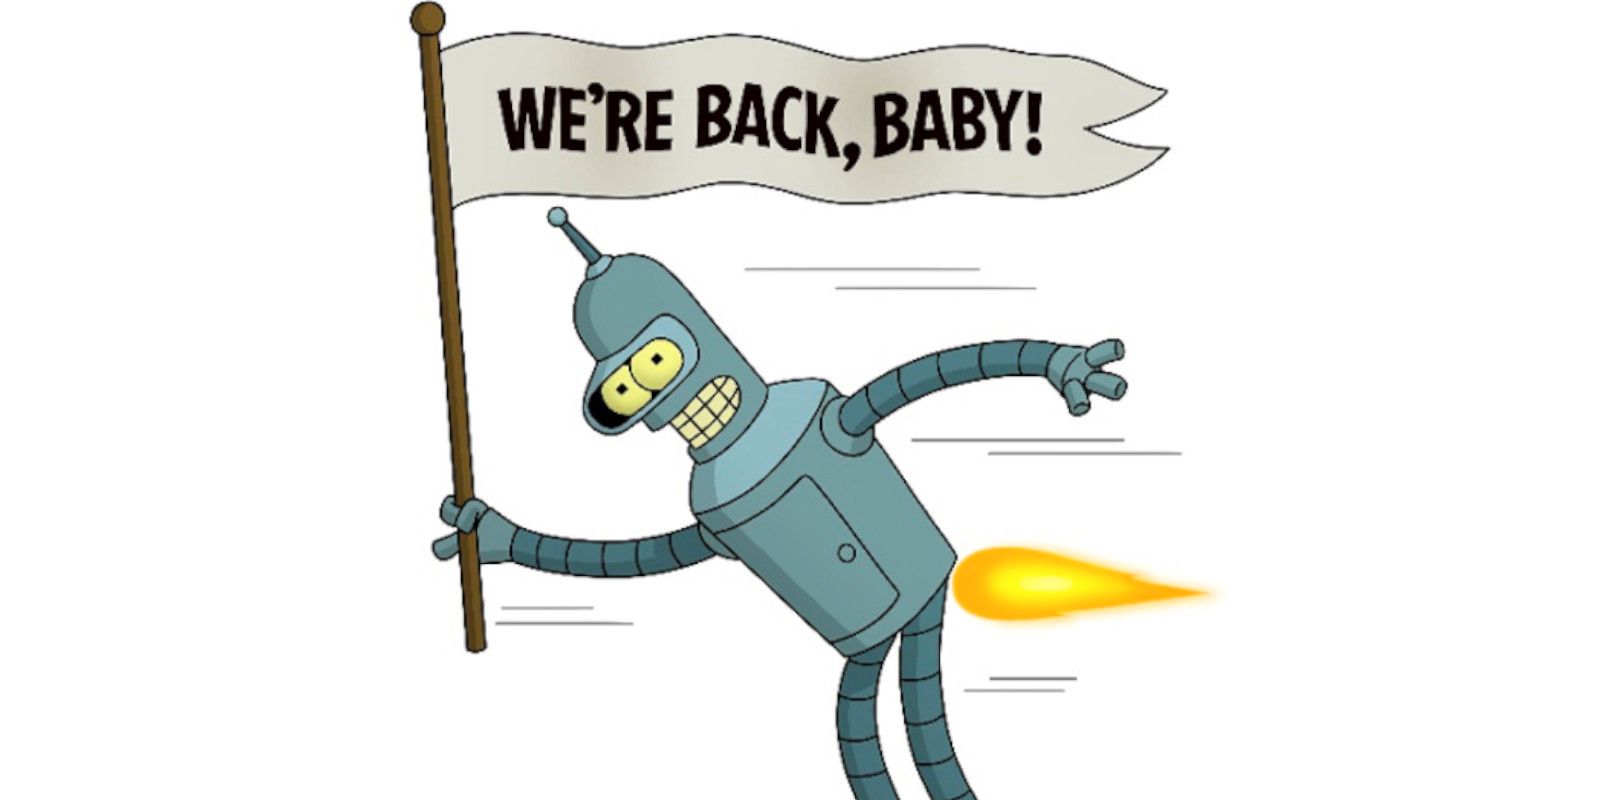 El actor de voz de Bender, John DiMaggio, reacciona al regreso confirmado de Futurama